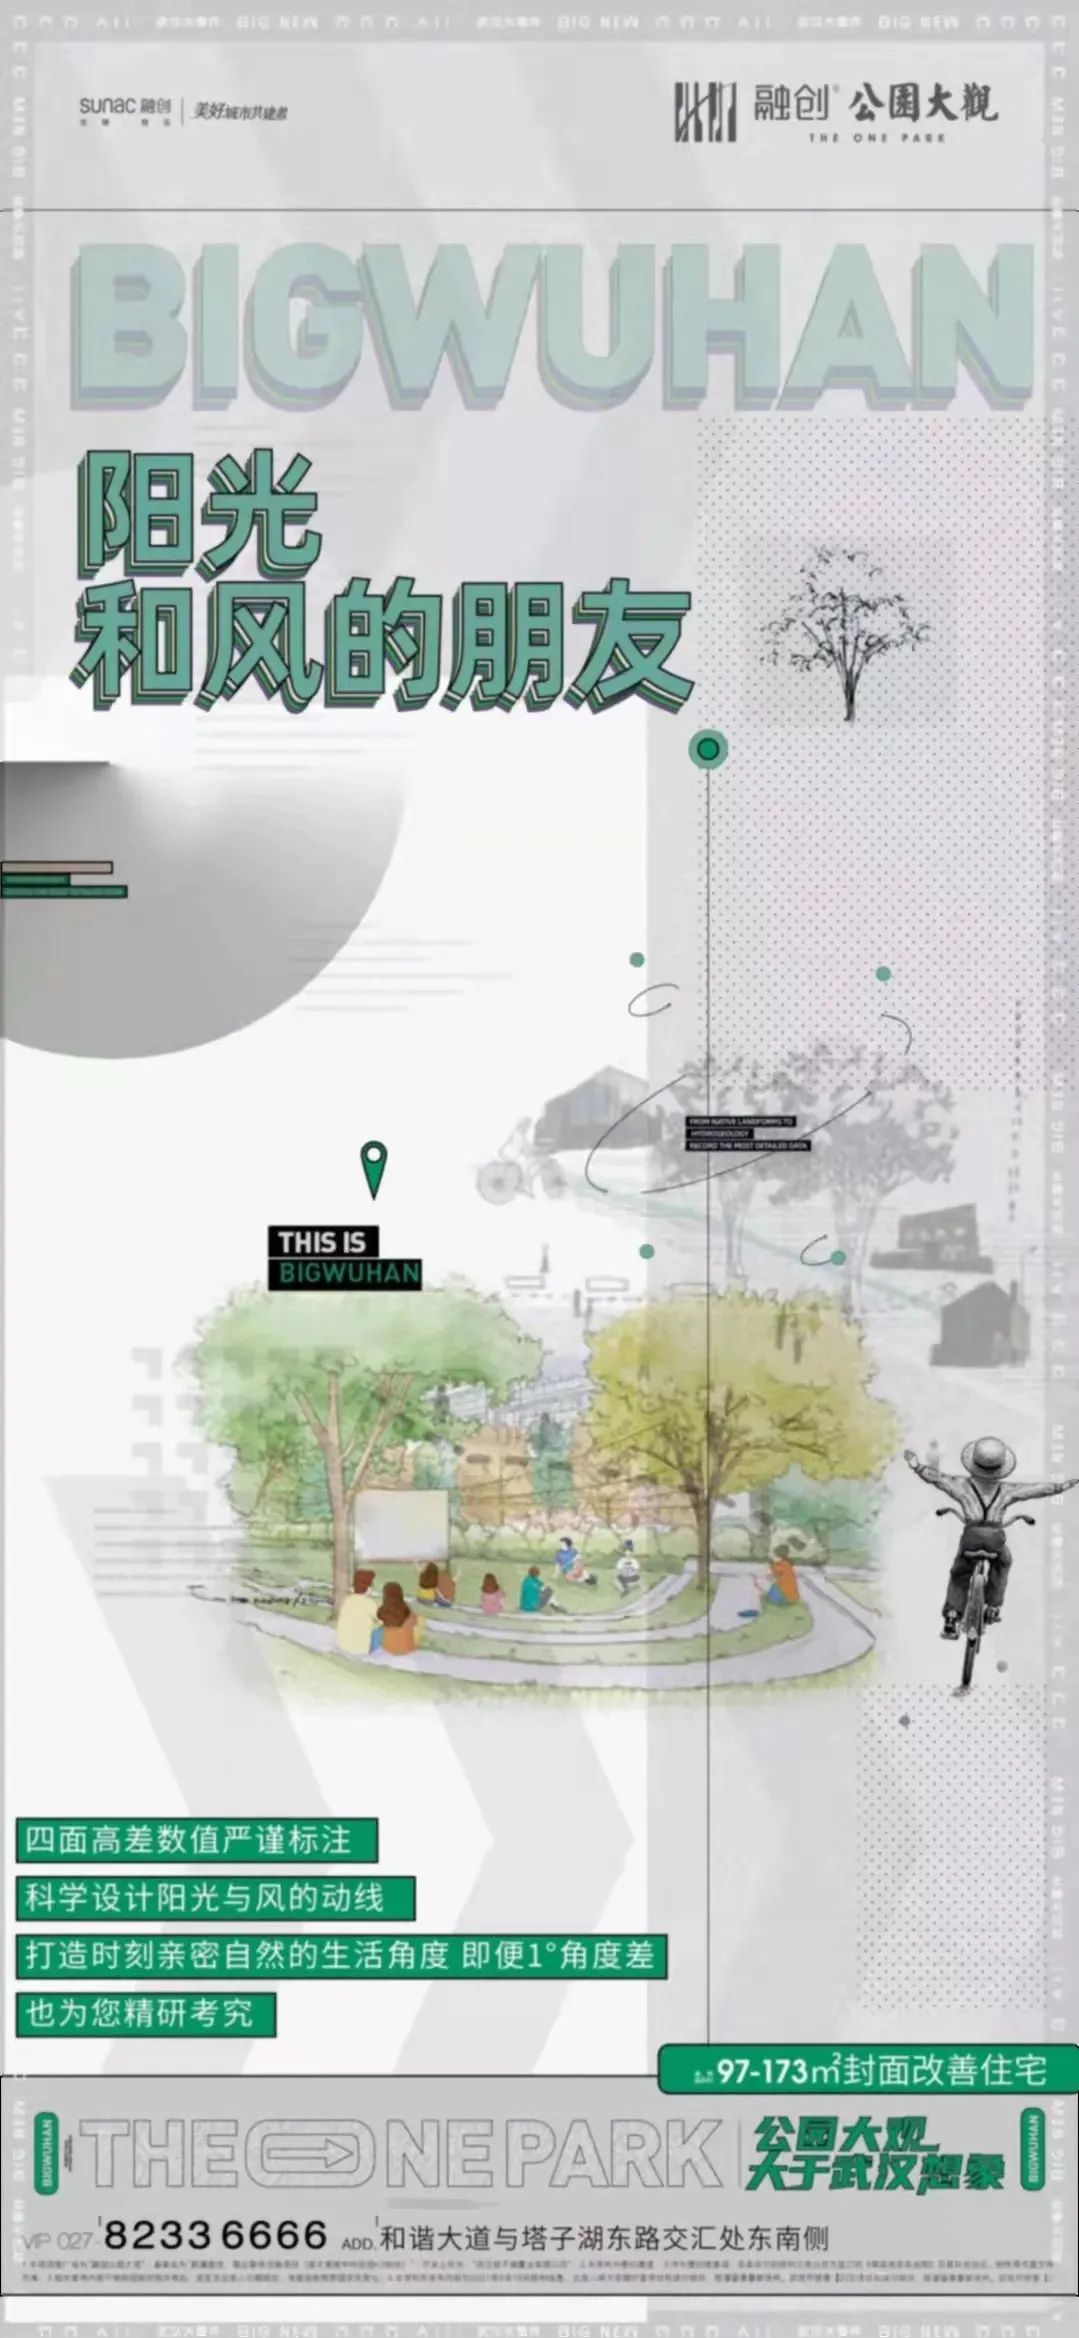 地产海报: 房地产工艺工法系列海报设计